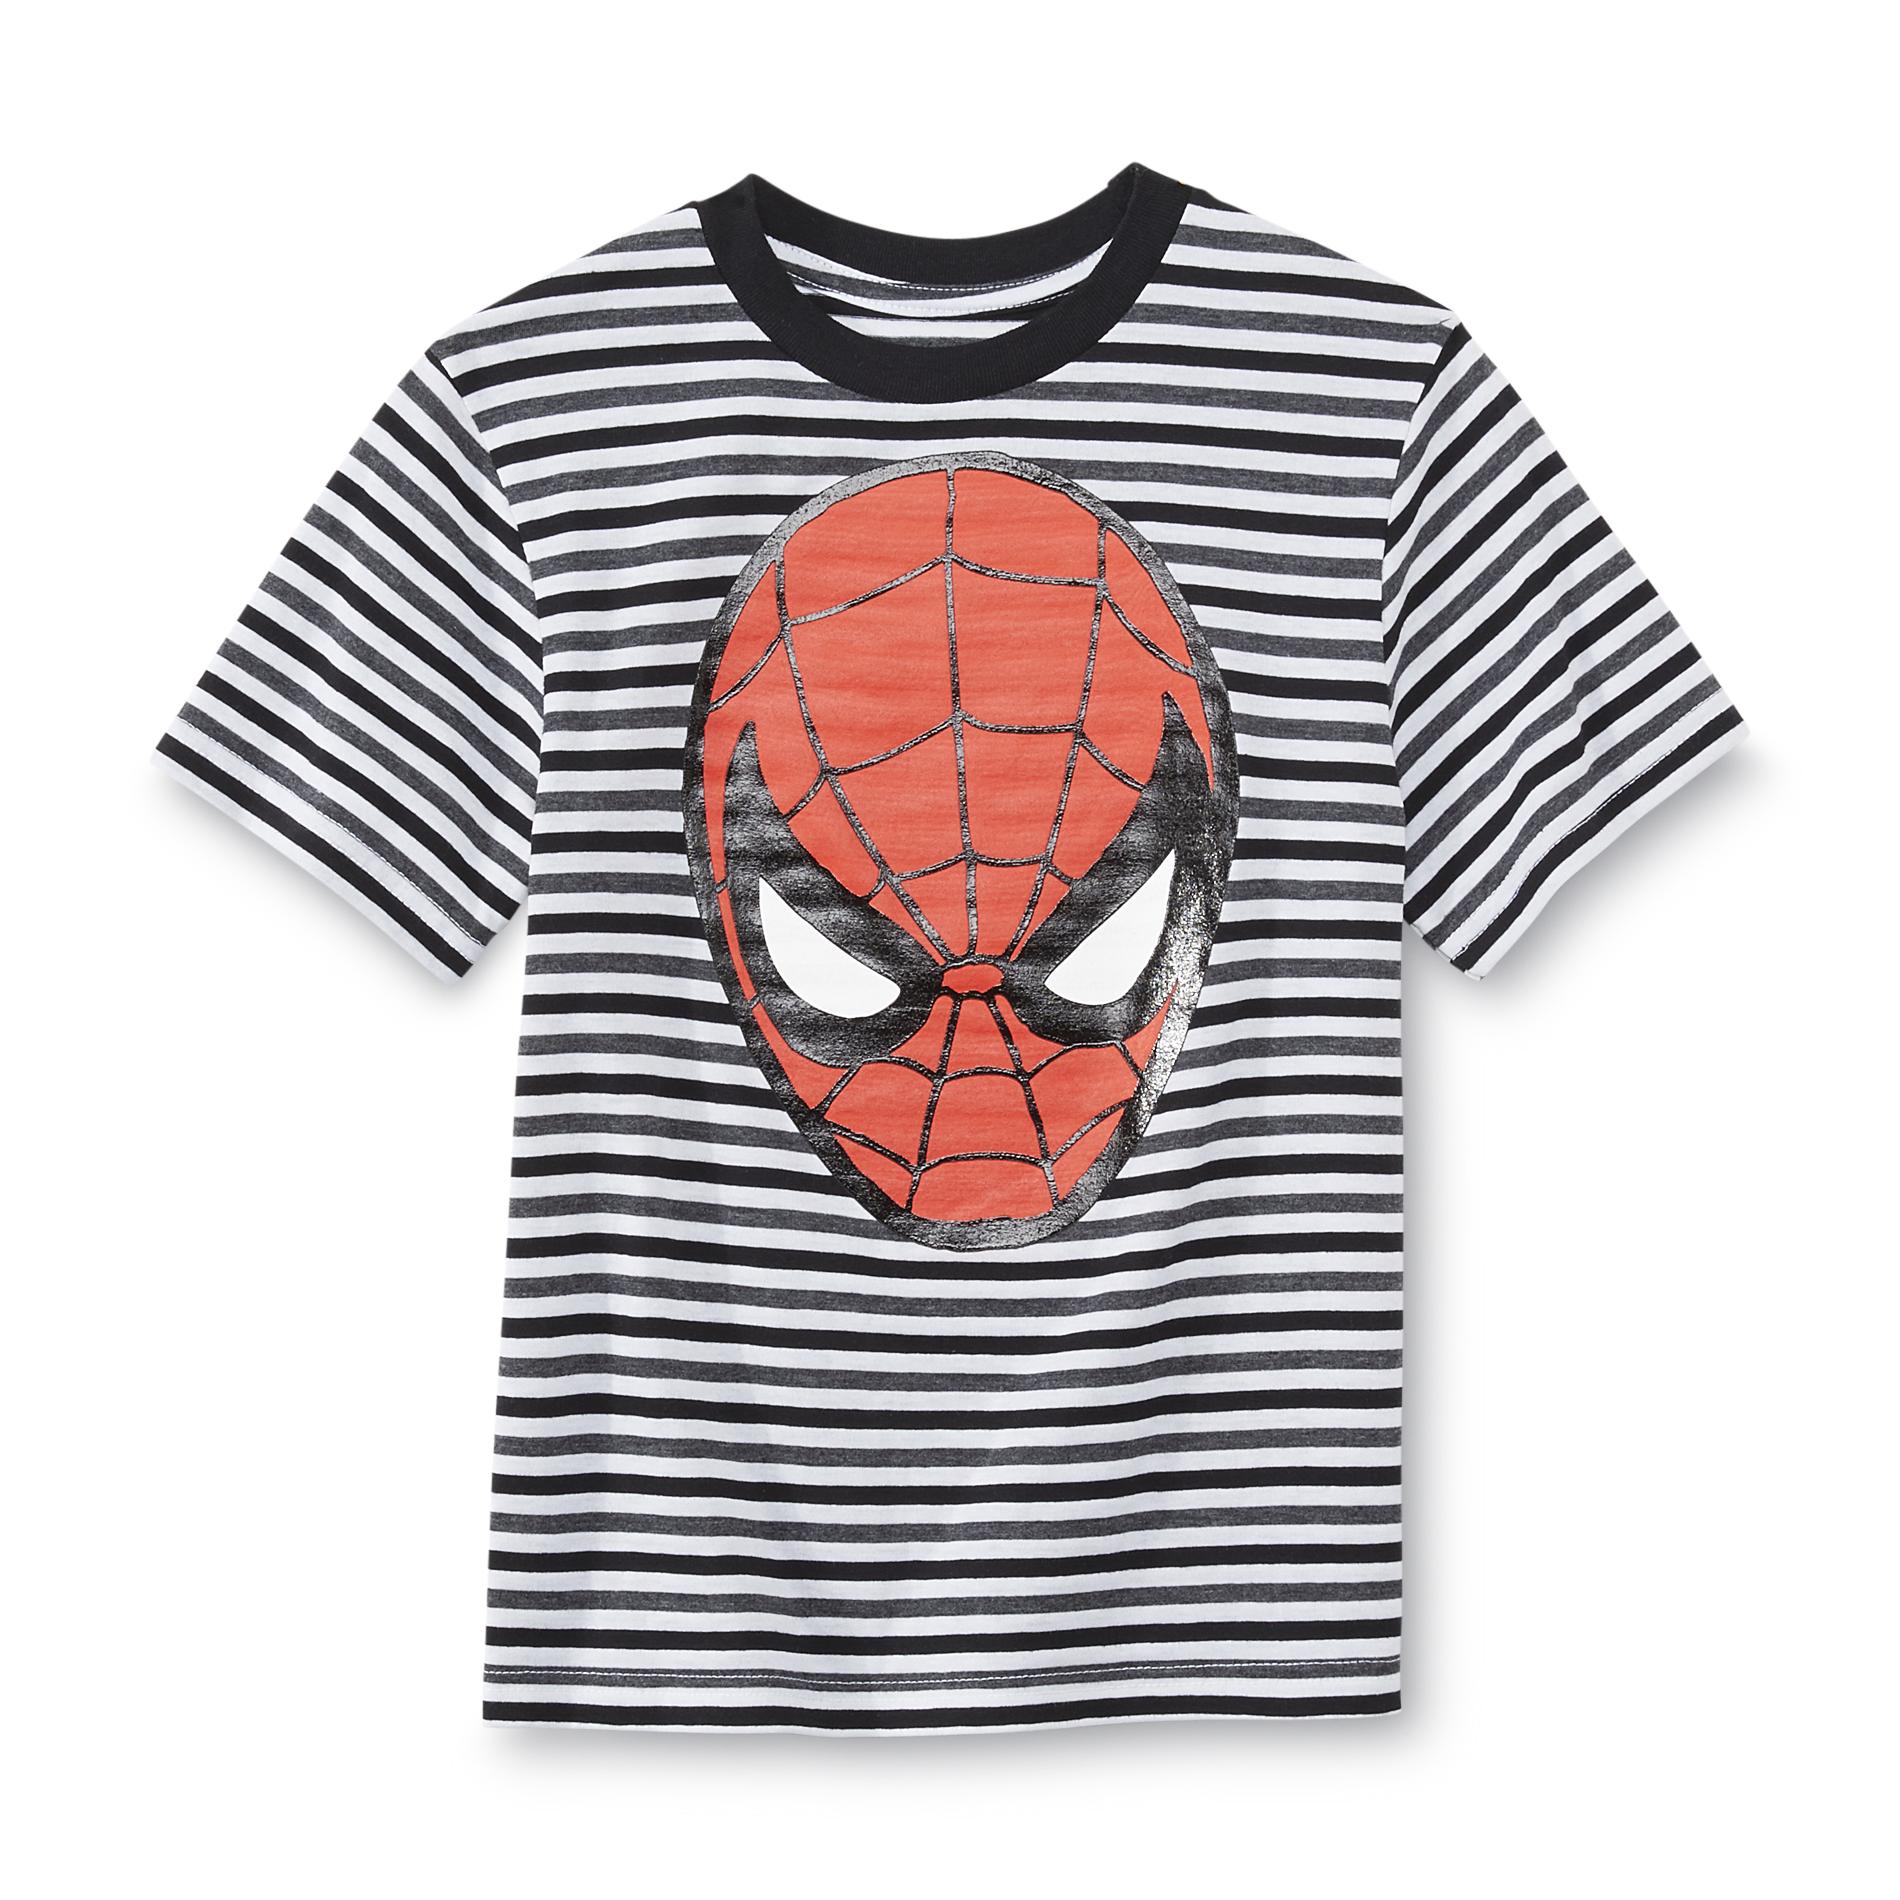 Marvel Boy's Spider-Man Graphic T-Shirt - Striped